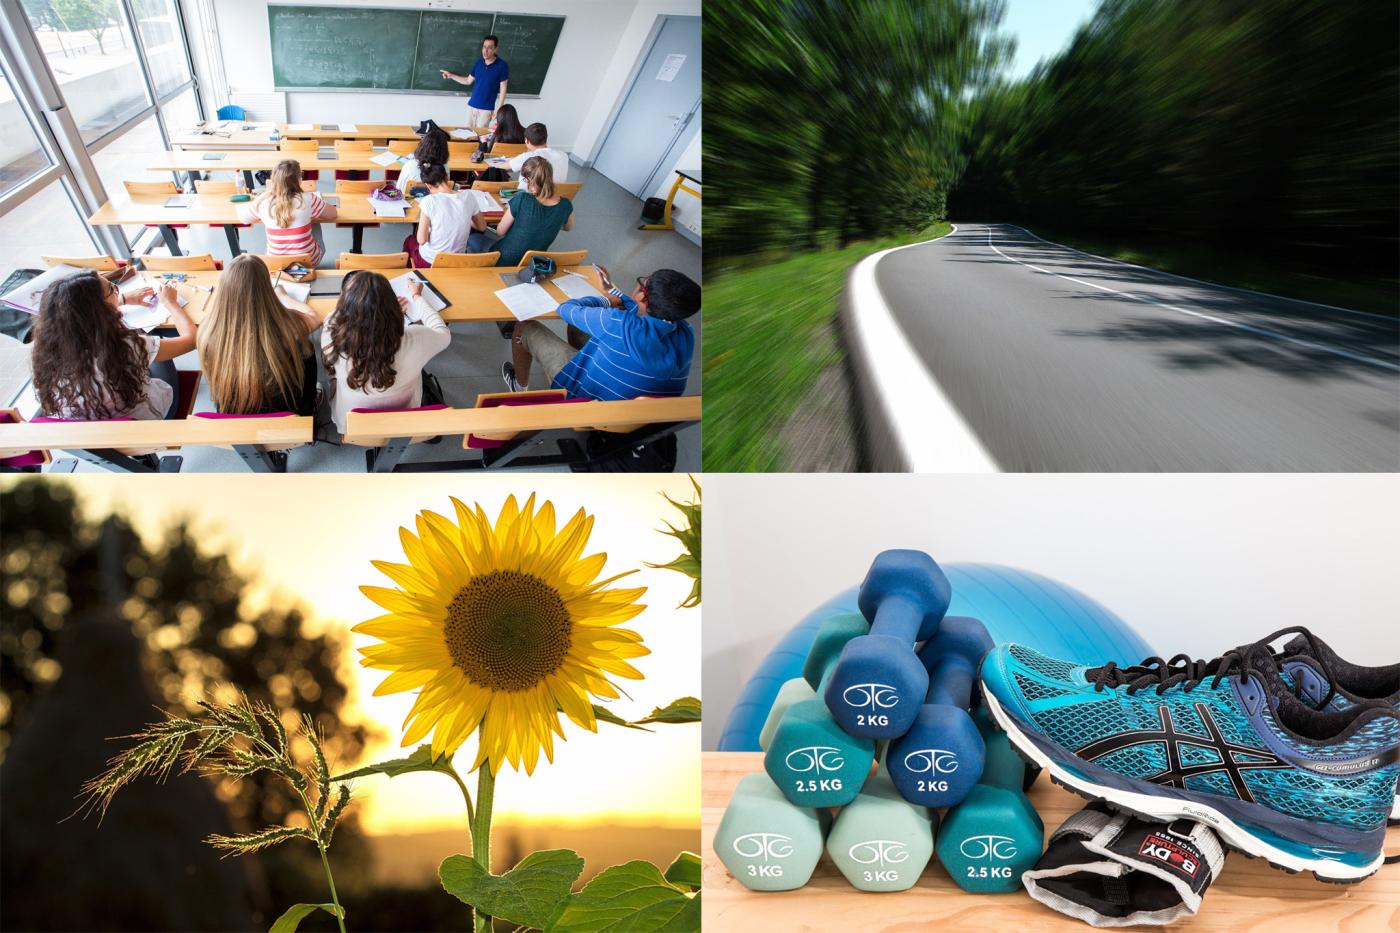 Le Département du Loiret recrute - education, routes, environnement, solidarité